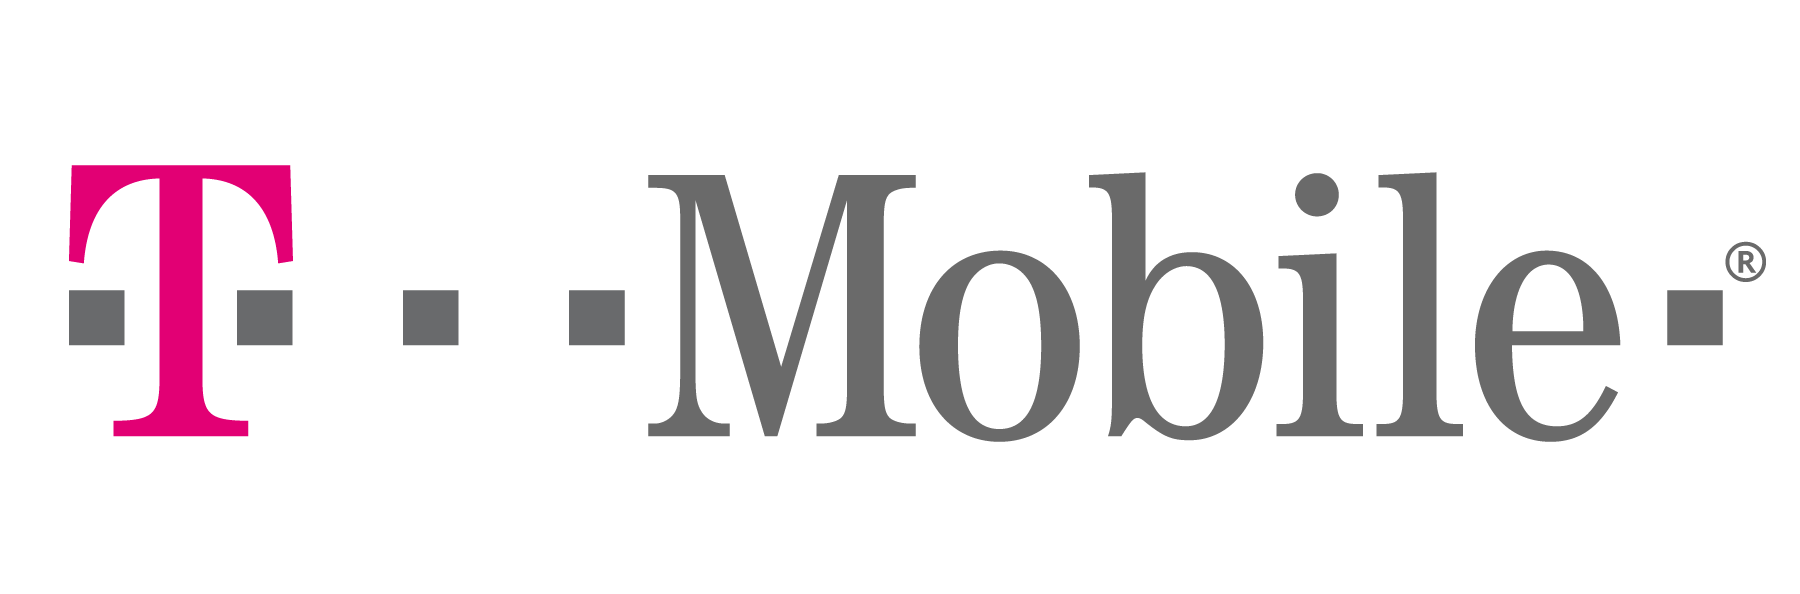 t-mobile-logo-transparent-t-mobile-logo.jpg